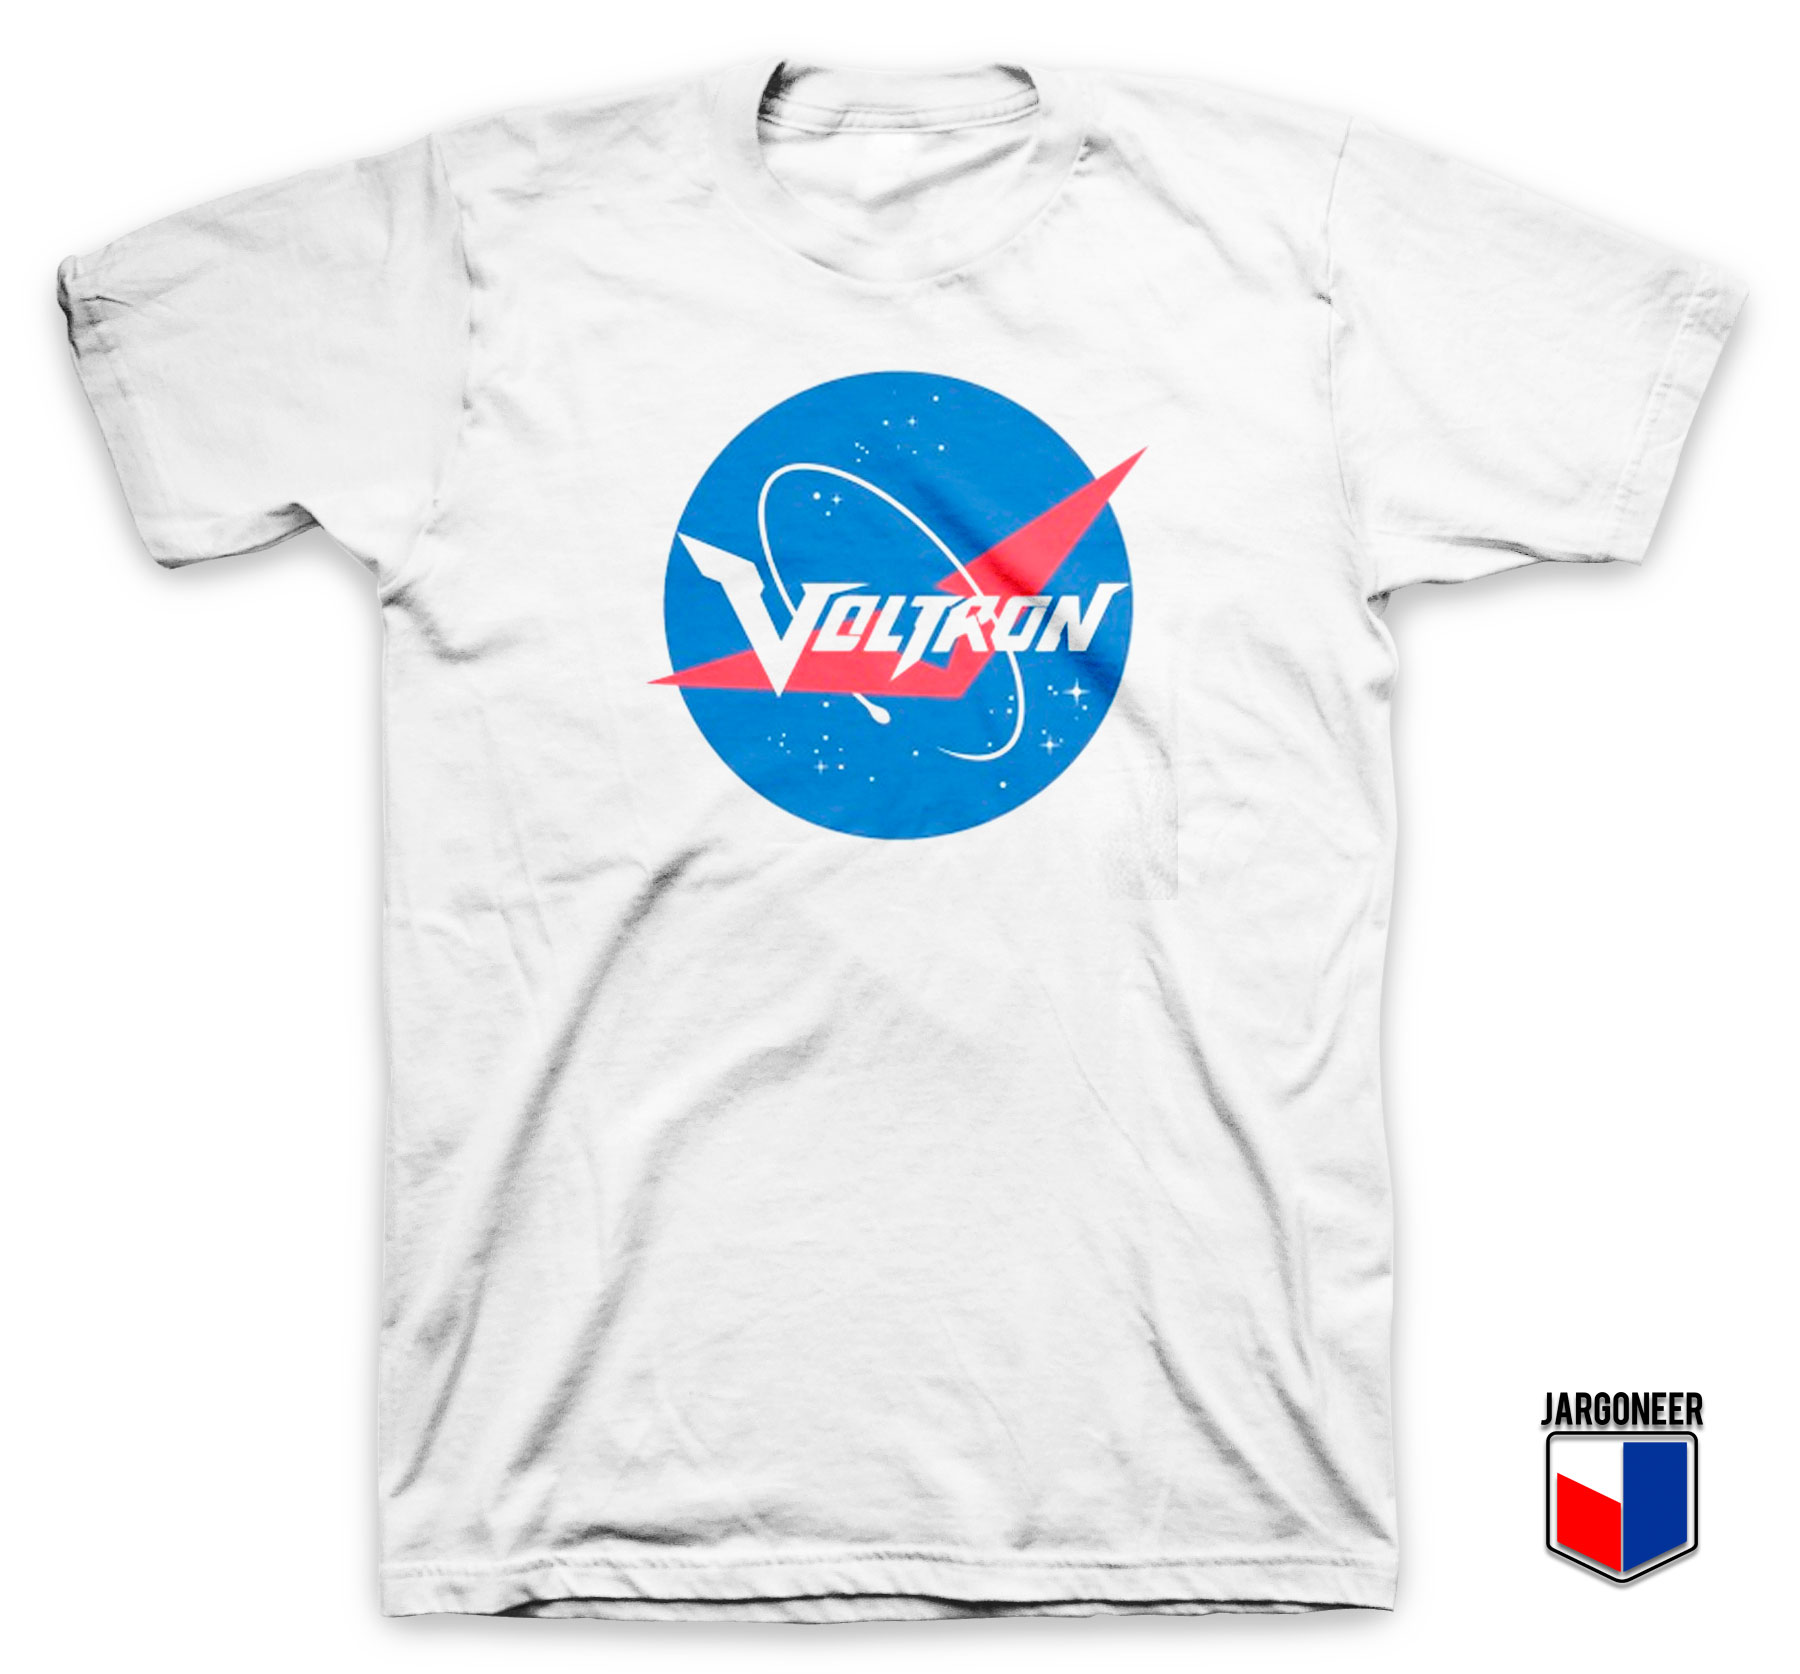 Voltron Nasa Parody T Shirt - Shop Unique Graphic Cool Shirt Designs